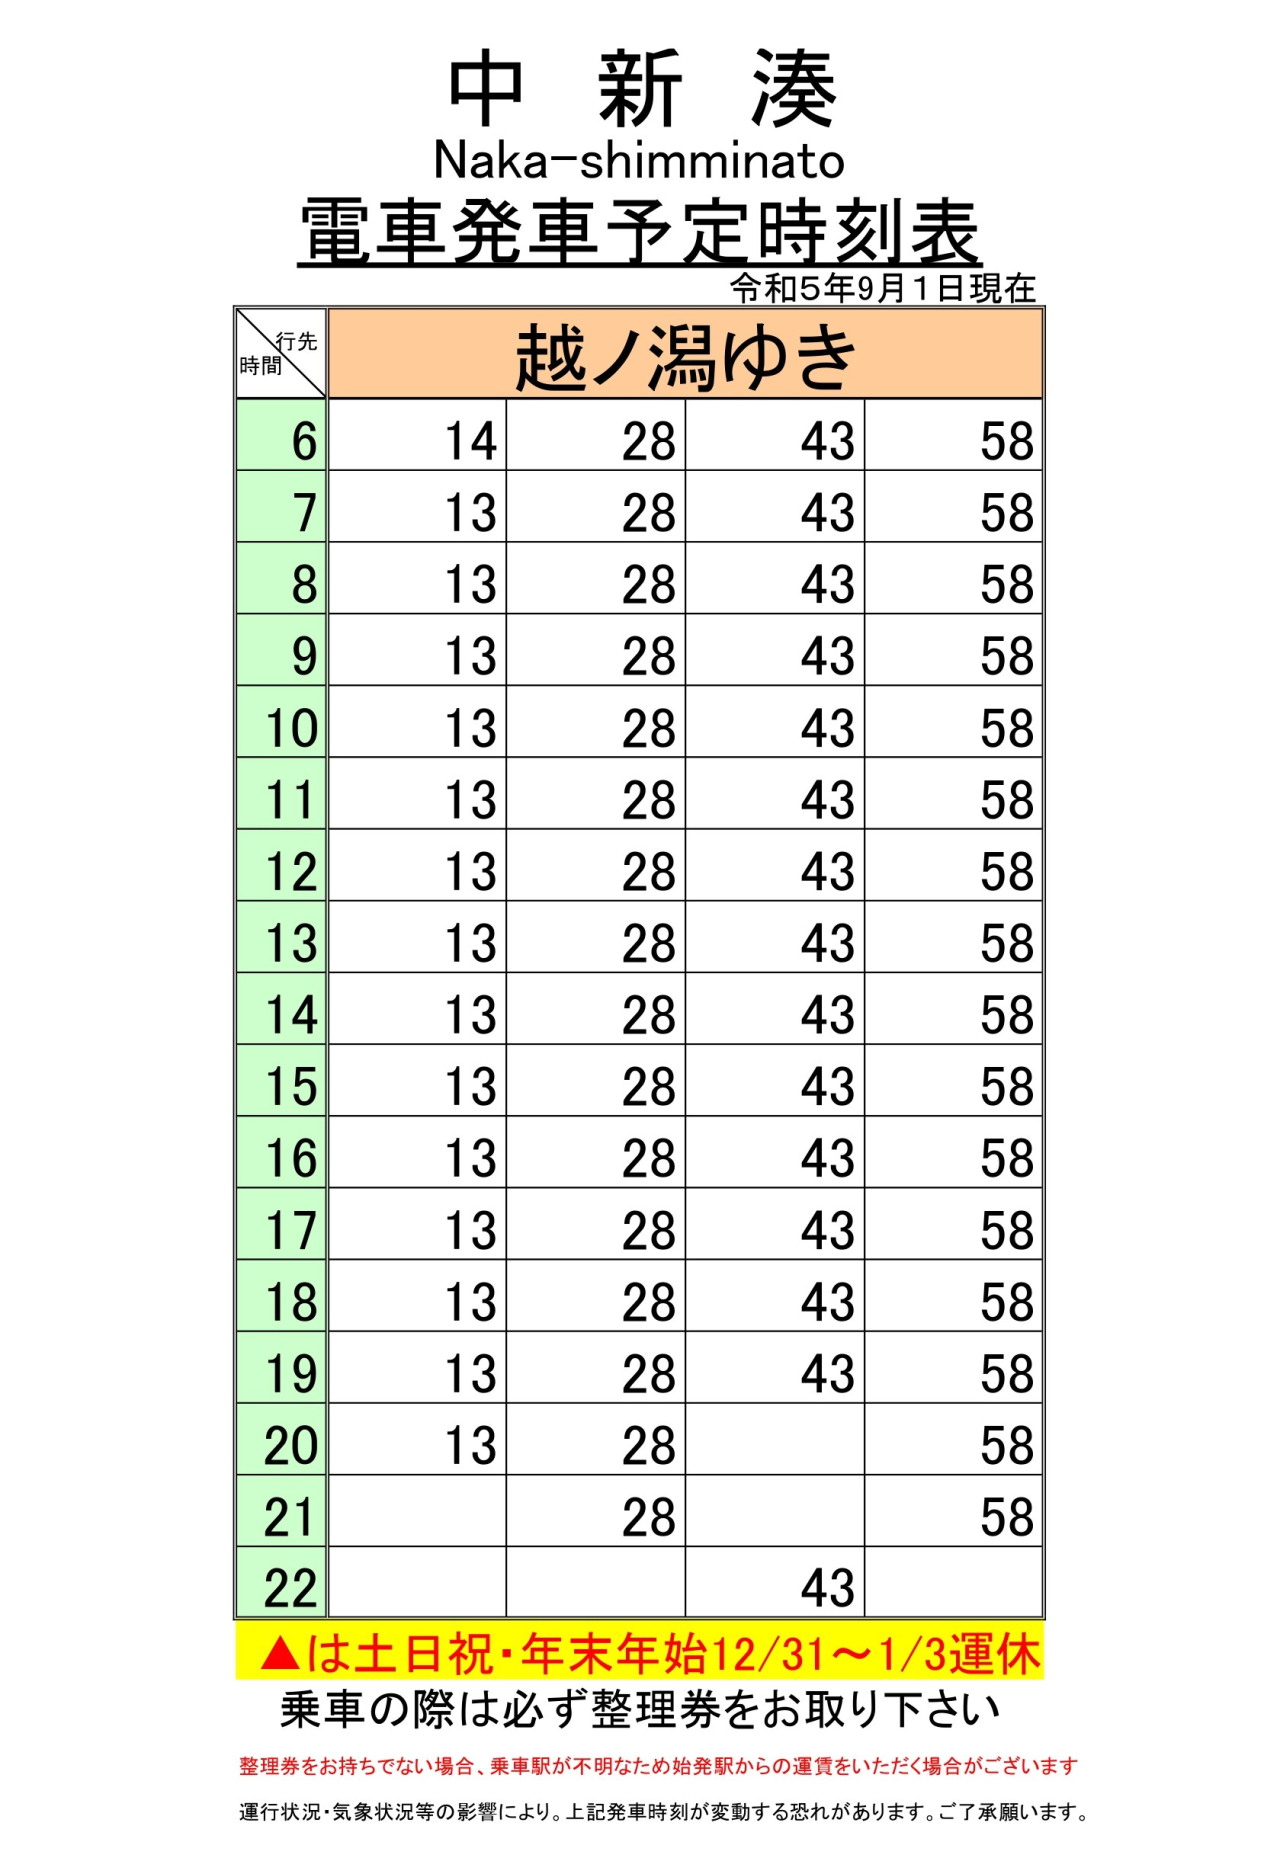 最新5.5.1改正各駅時刻表(中新湊下り)_page-0001